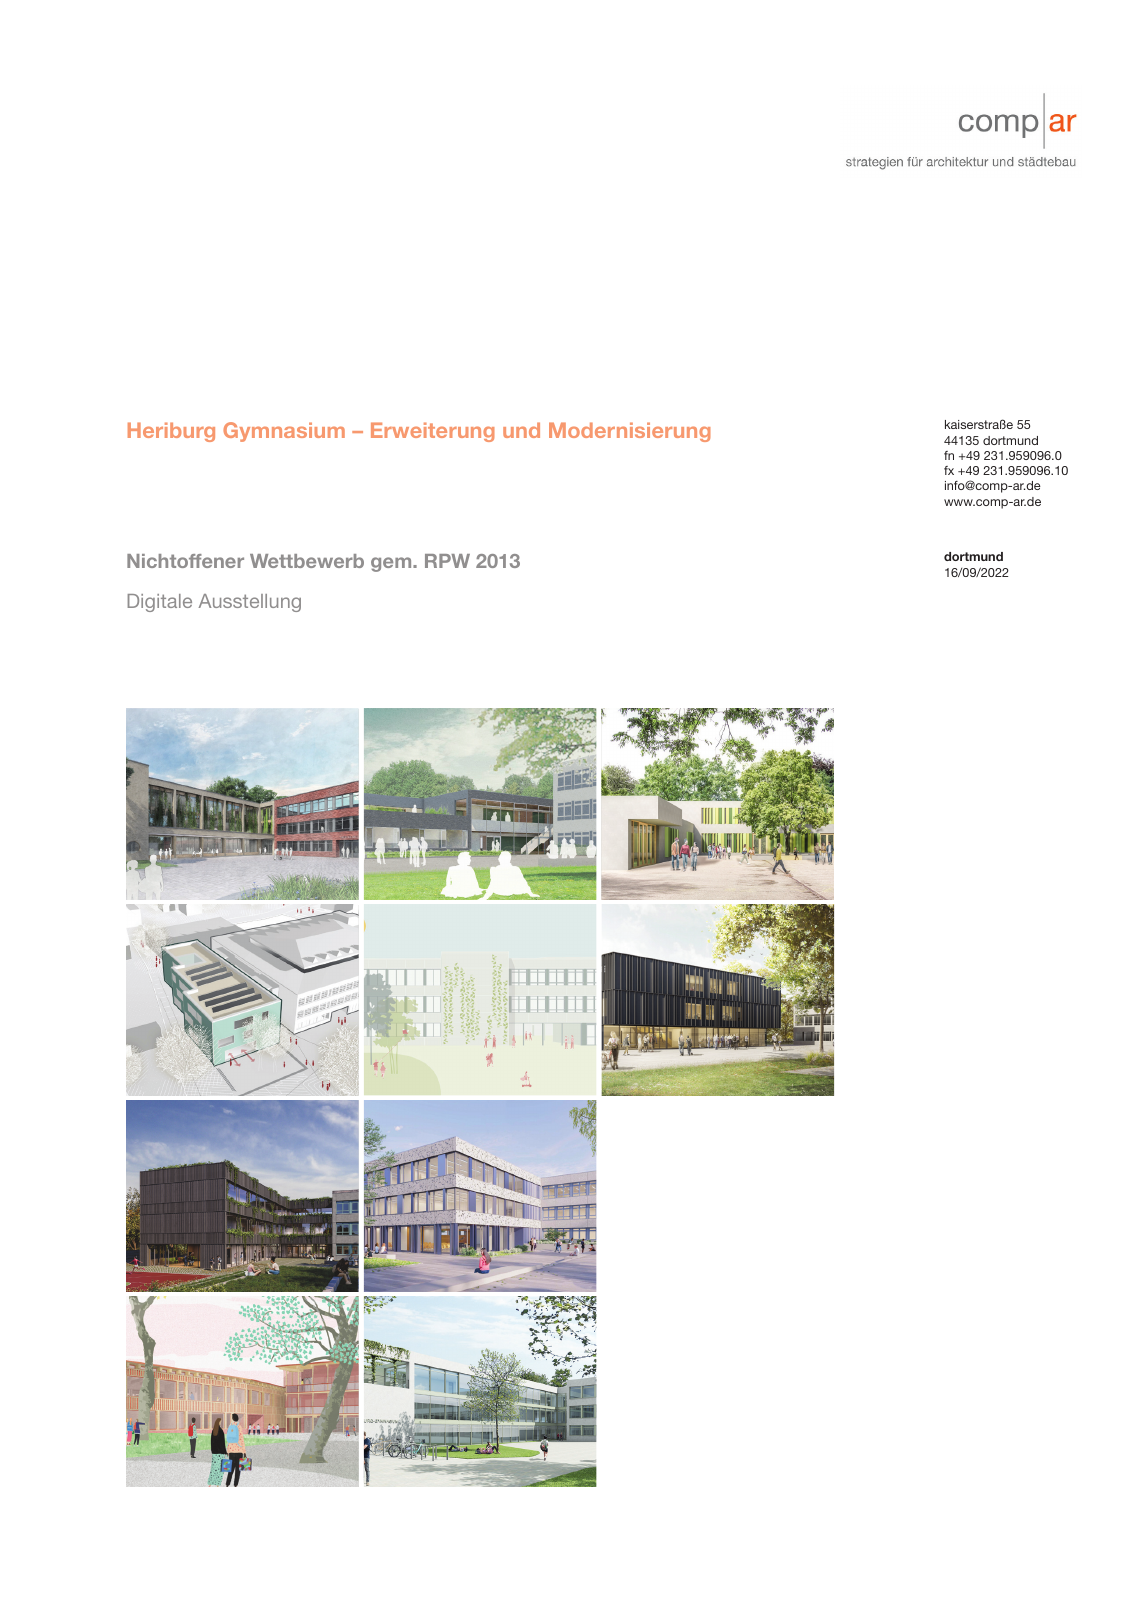 Vorschau Erweiterung und Modernisierung Heriburg Gymnasium [Coesfeld] Seite 1